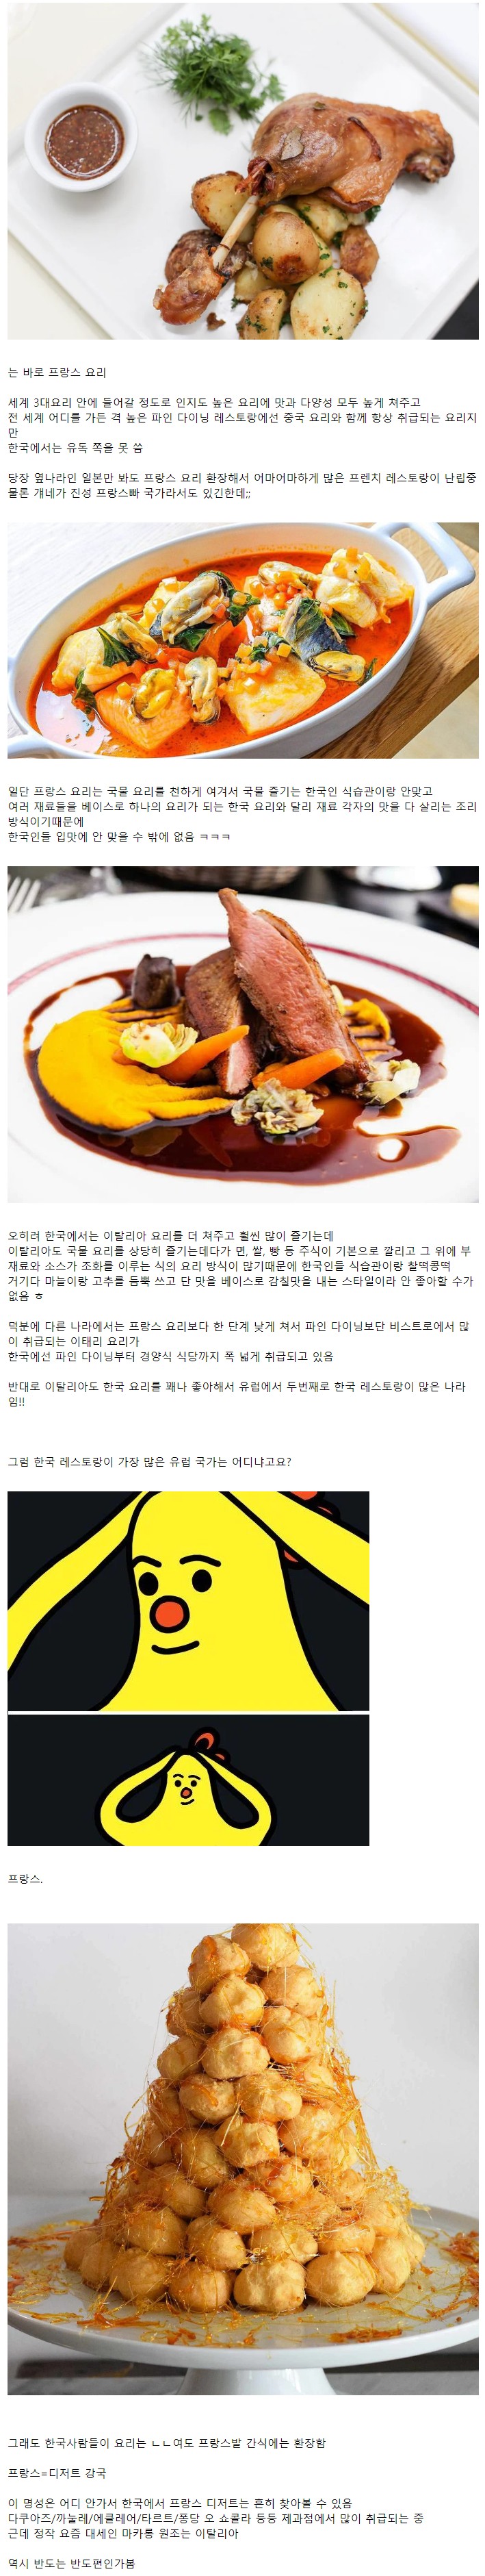 유독 한국에서만 위상 낮은 외국 음식.jpg